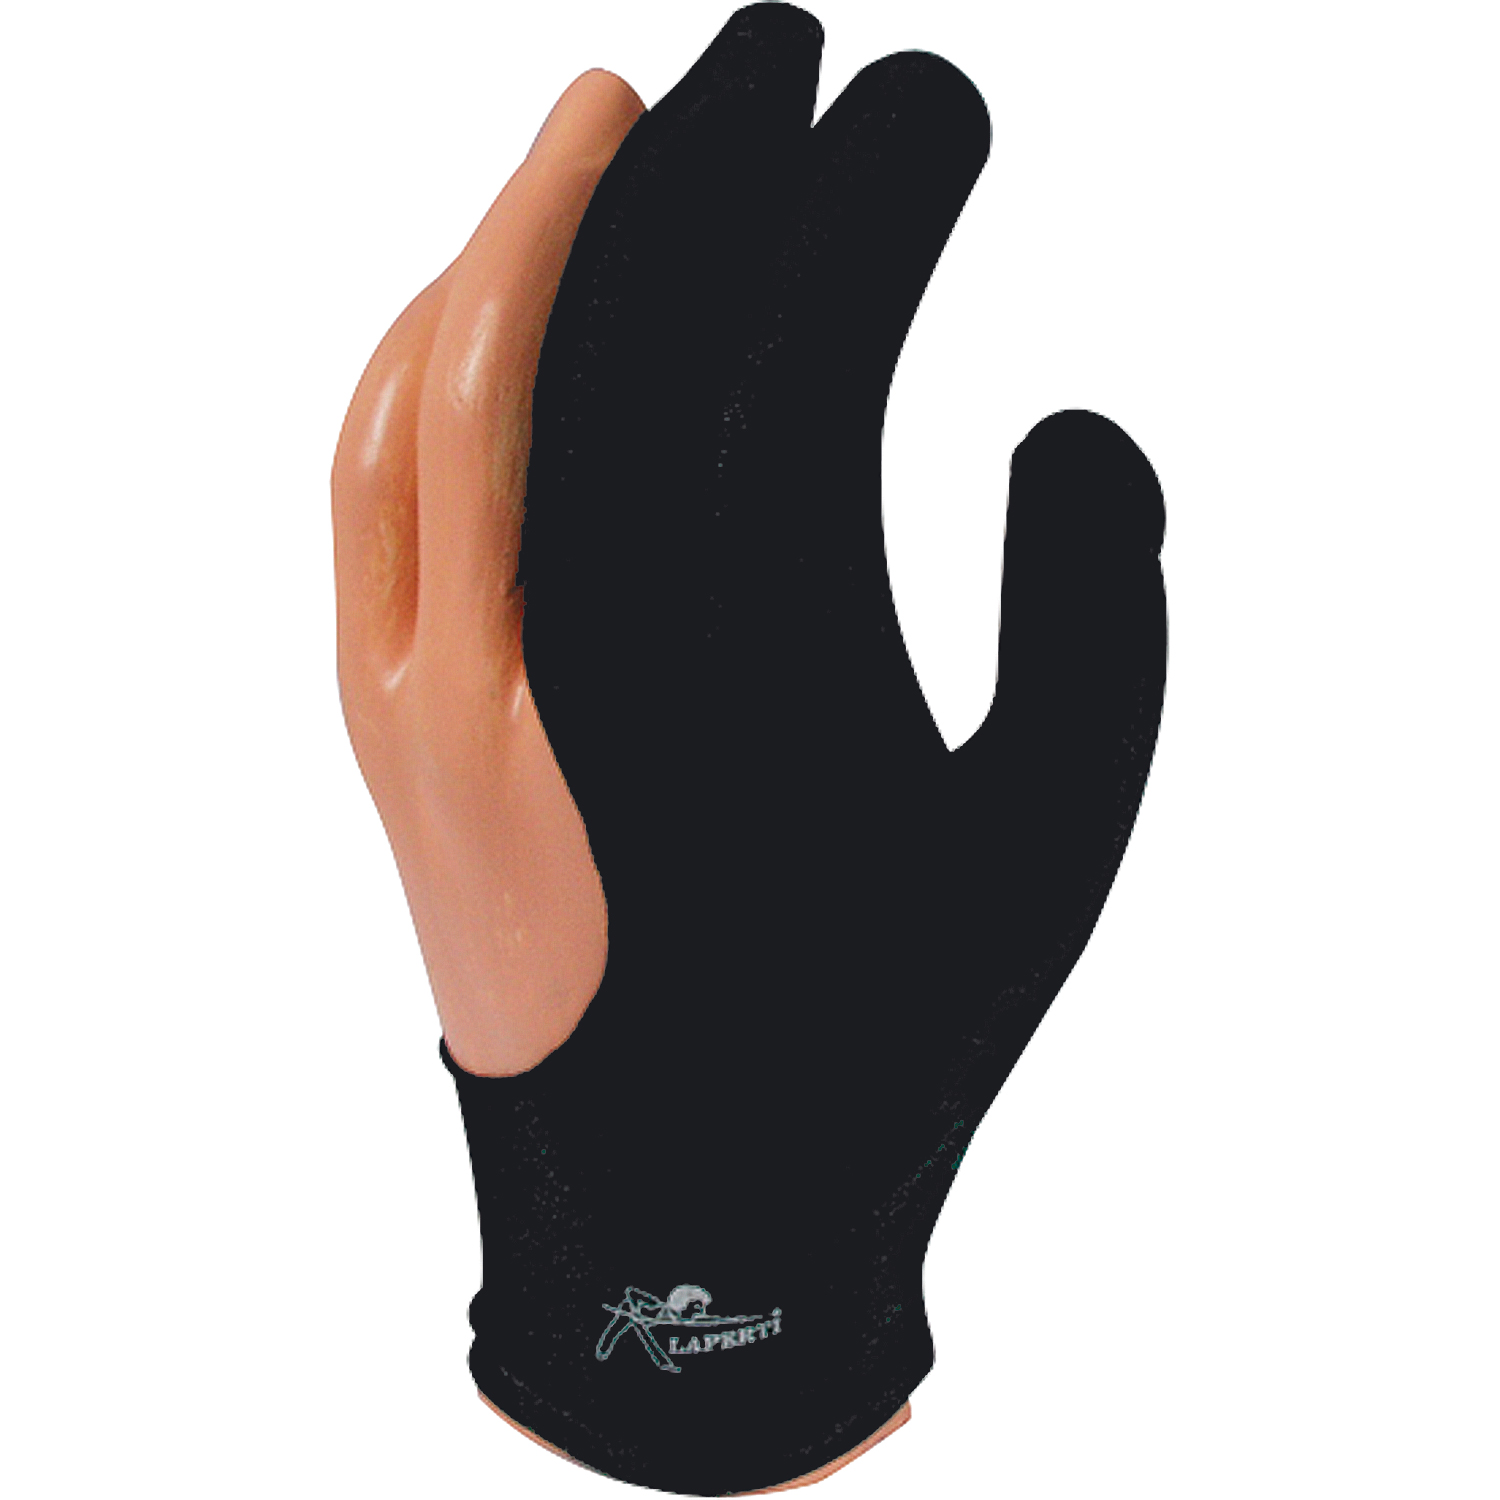 Handschuh Laperti schwarz, groß